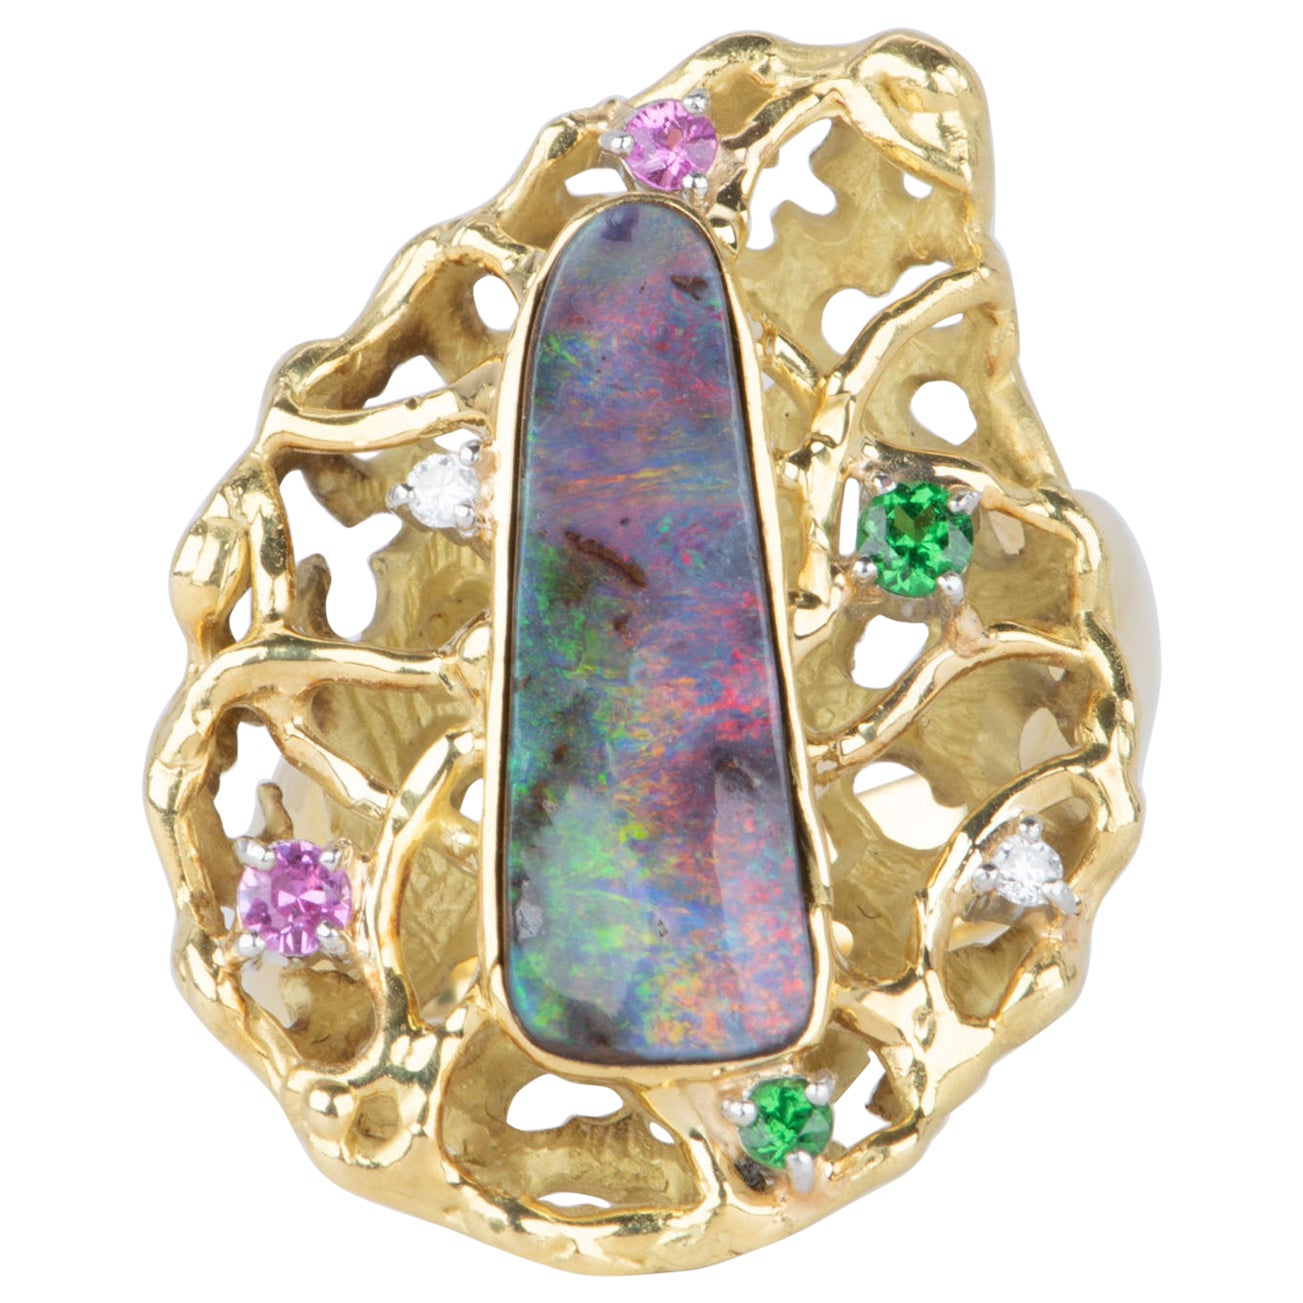 Australischer australischer Boulder Opal Modernistischer Design Statement-Ring 18K Gold 14,2g V1112